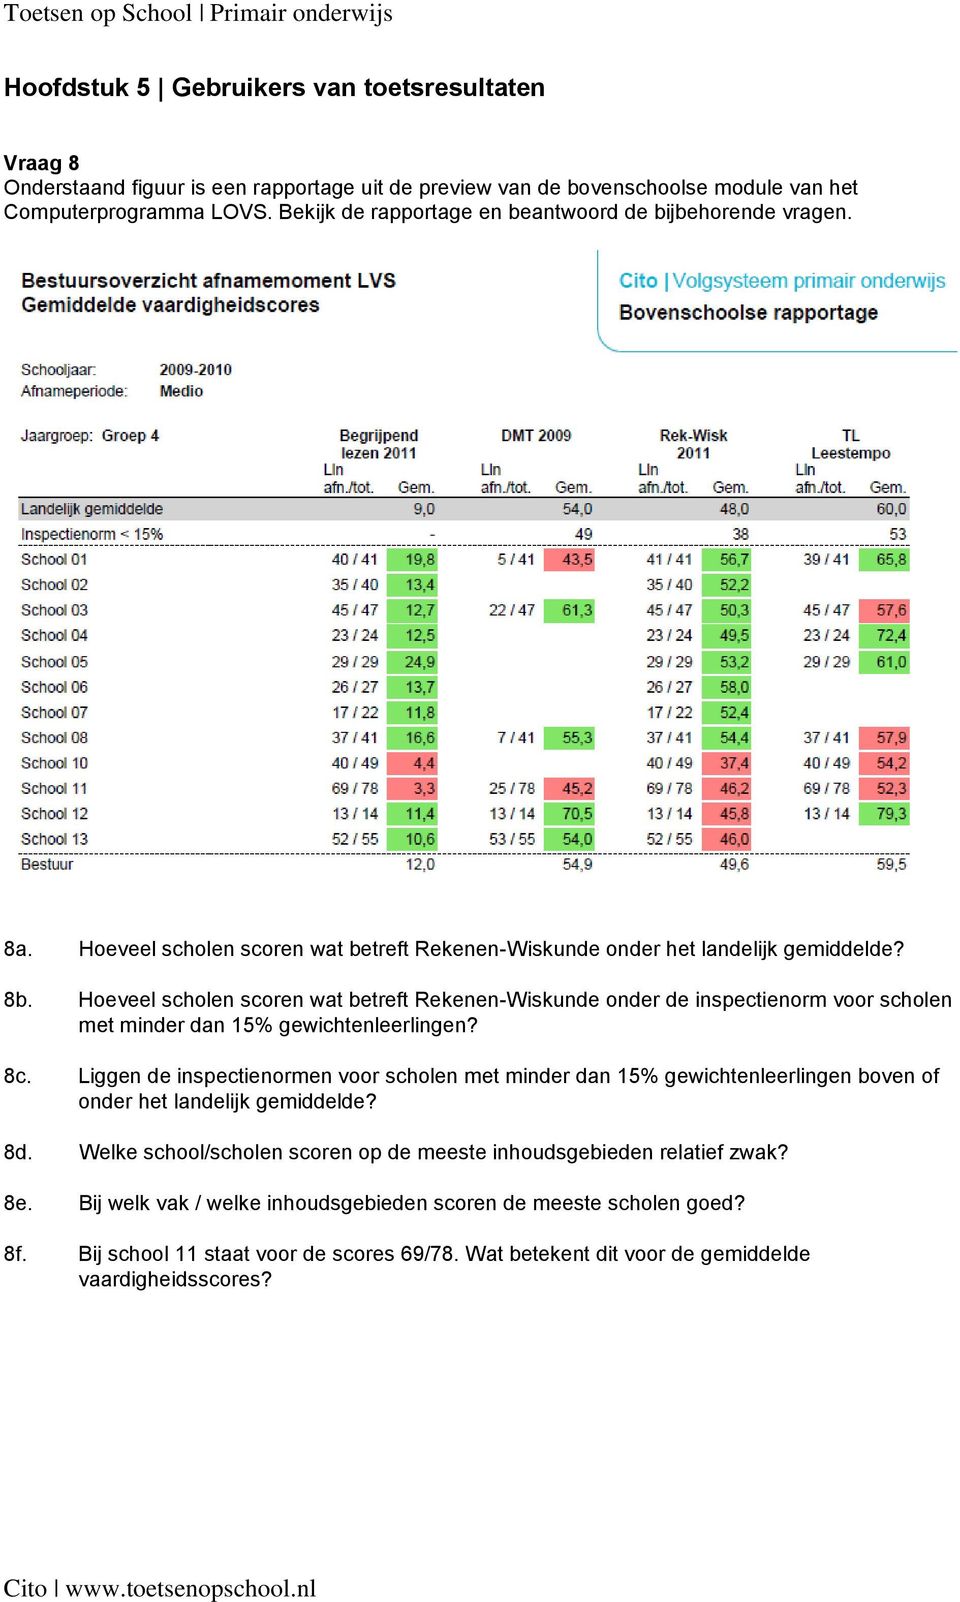 Hoeveel scholen scoren wat betreft Rekenen-Wiskunde onder de inspectienorm voor scholen met minder dan 15% gewichtenleerlingen? 8c.